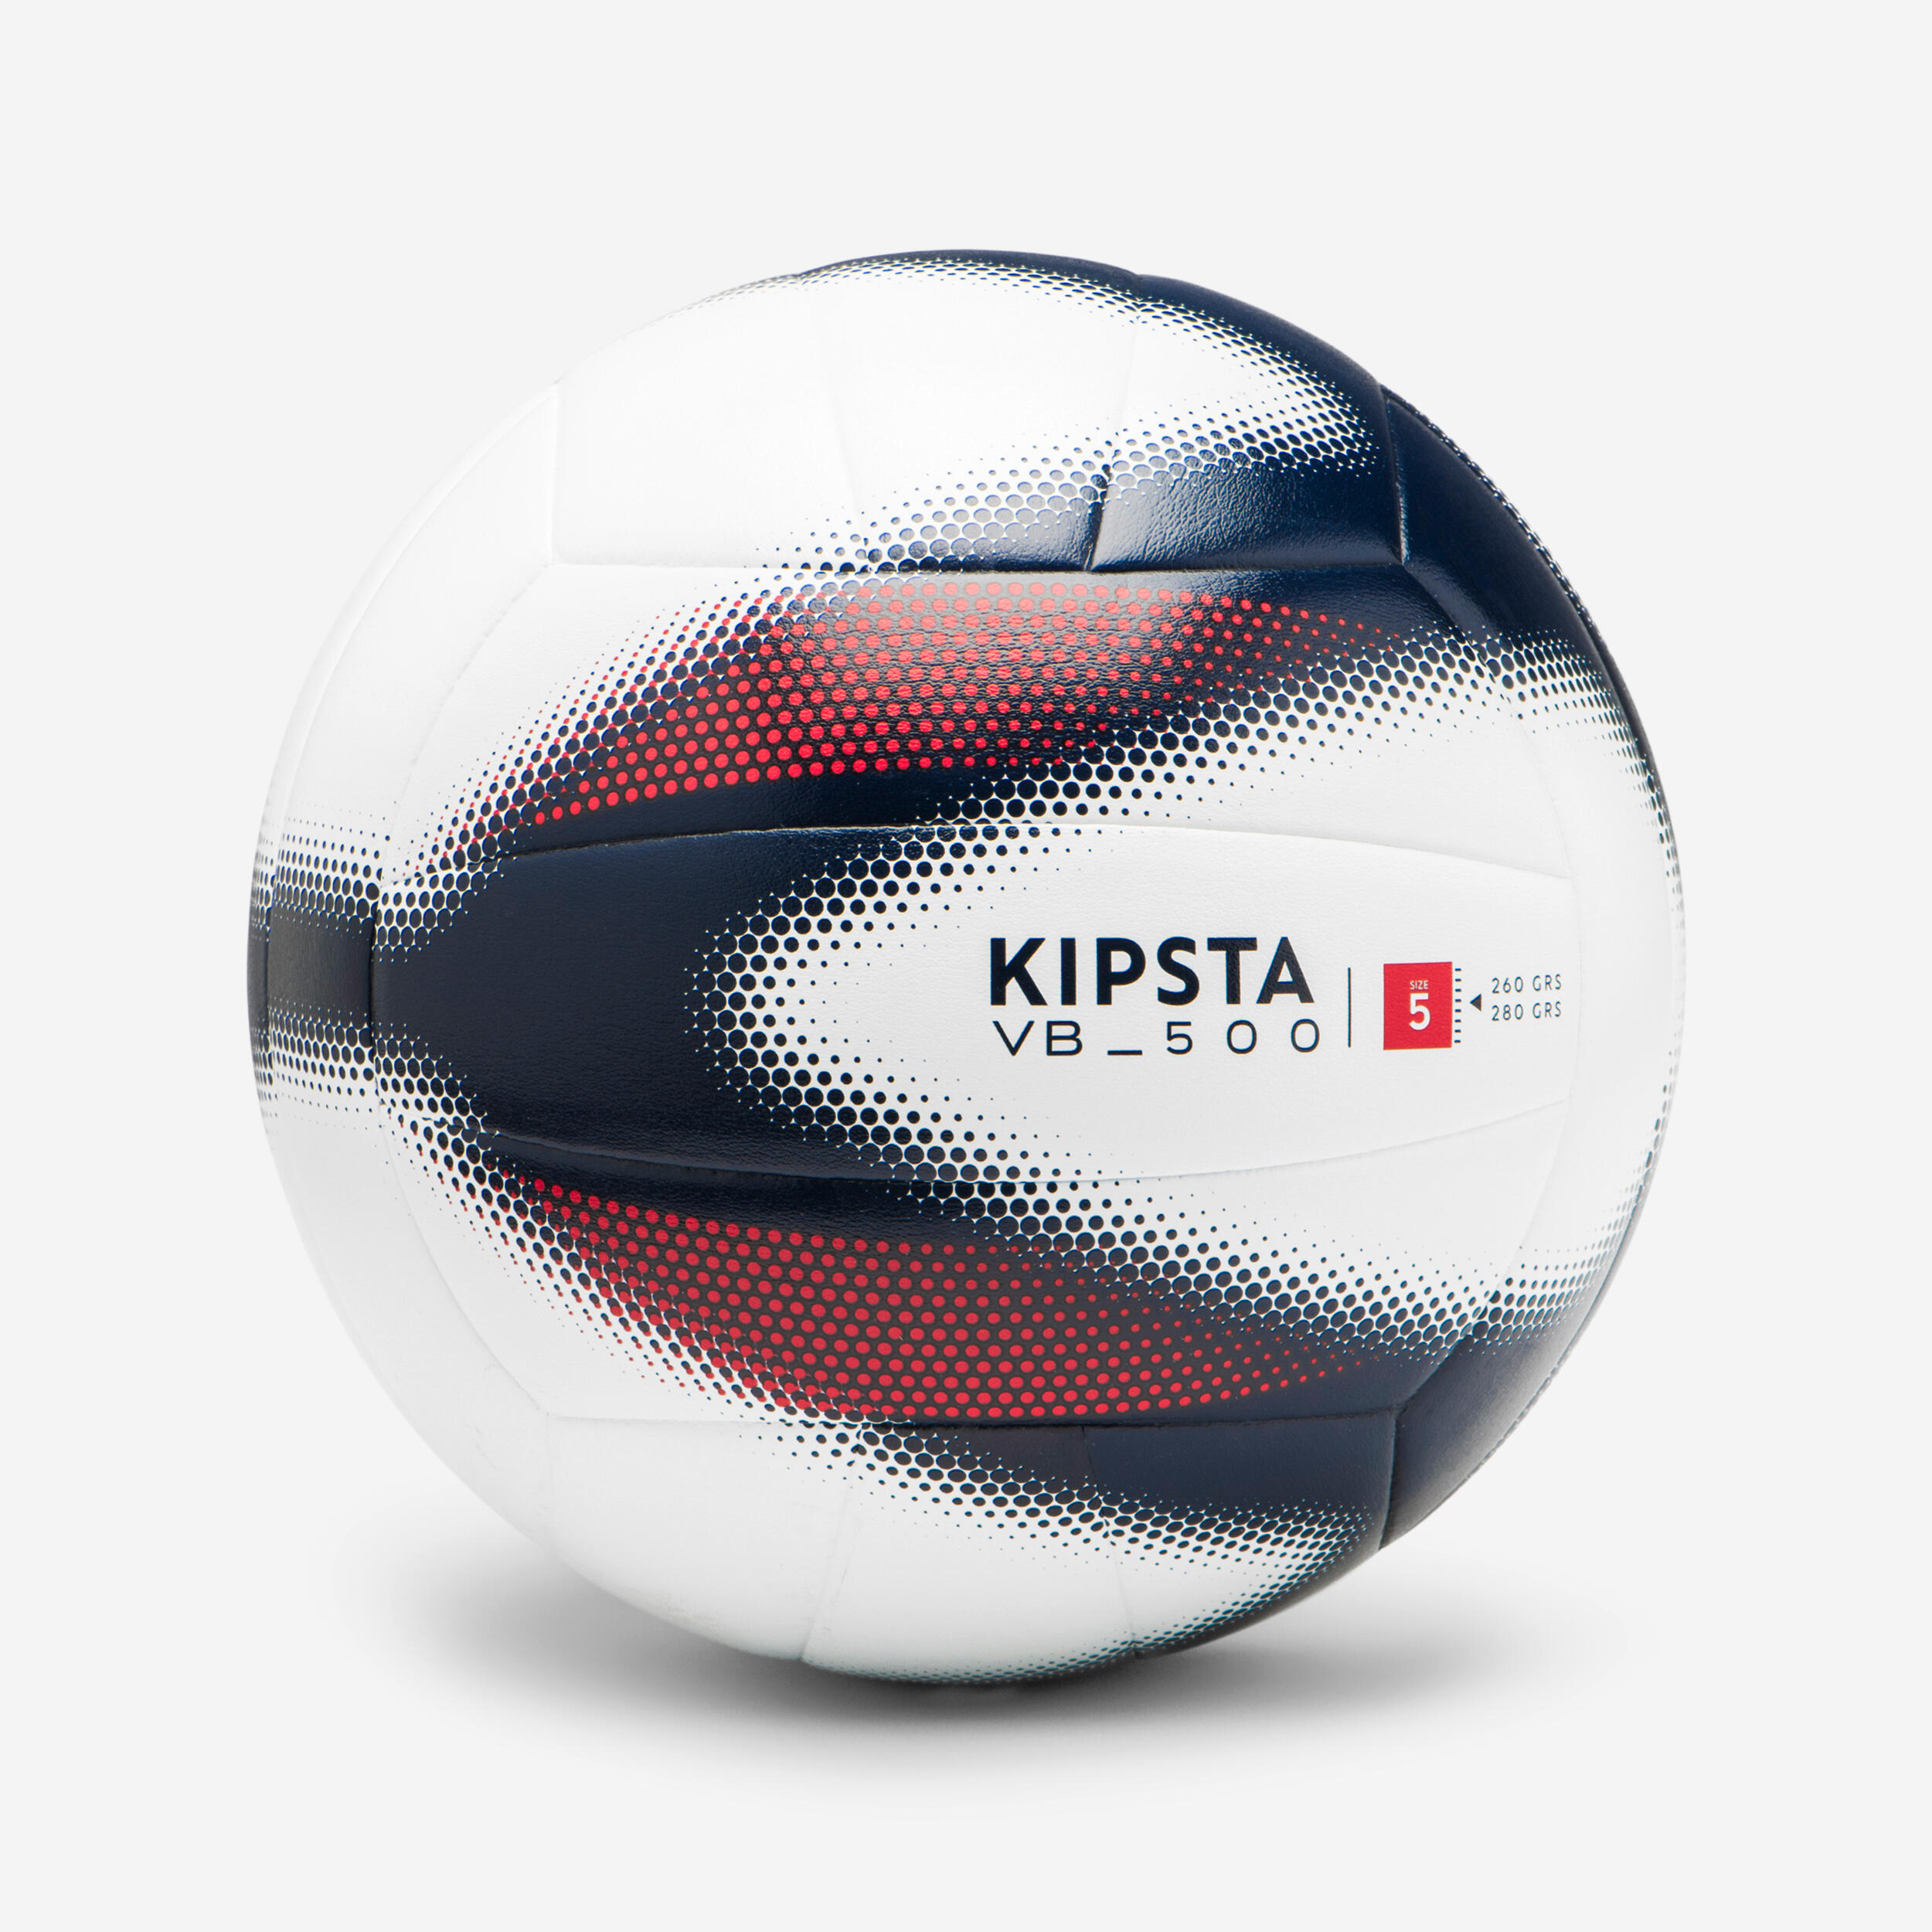 Test des genouillères de volley Kipsta V900 - Décathlon